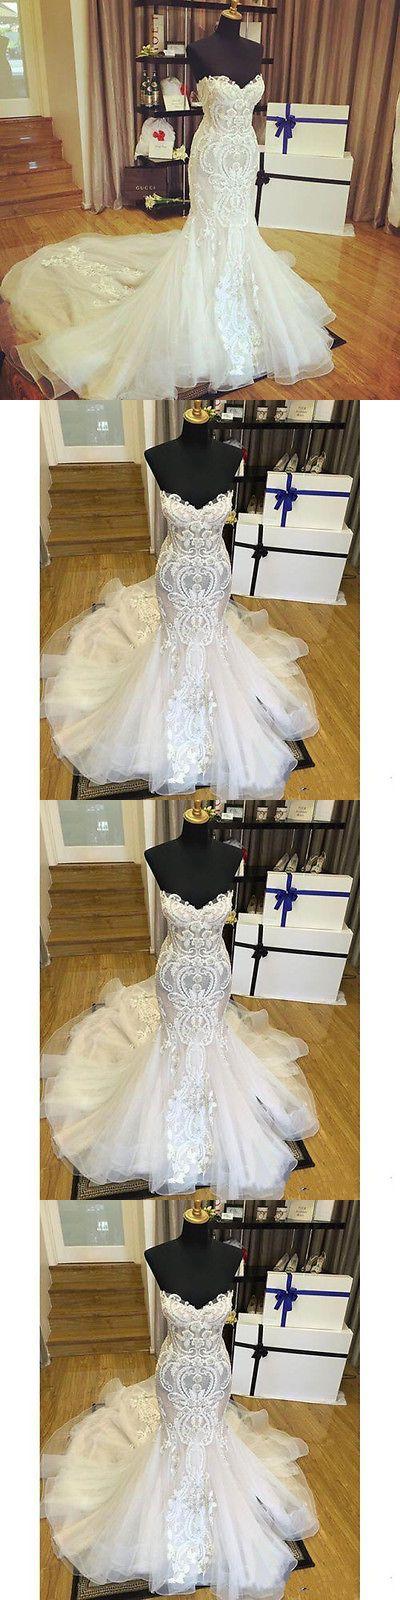 زفاف - Wedding Fashion